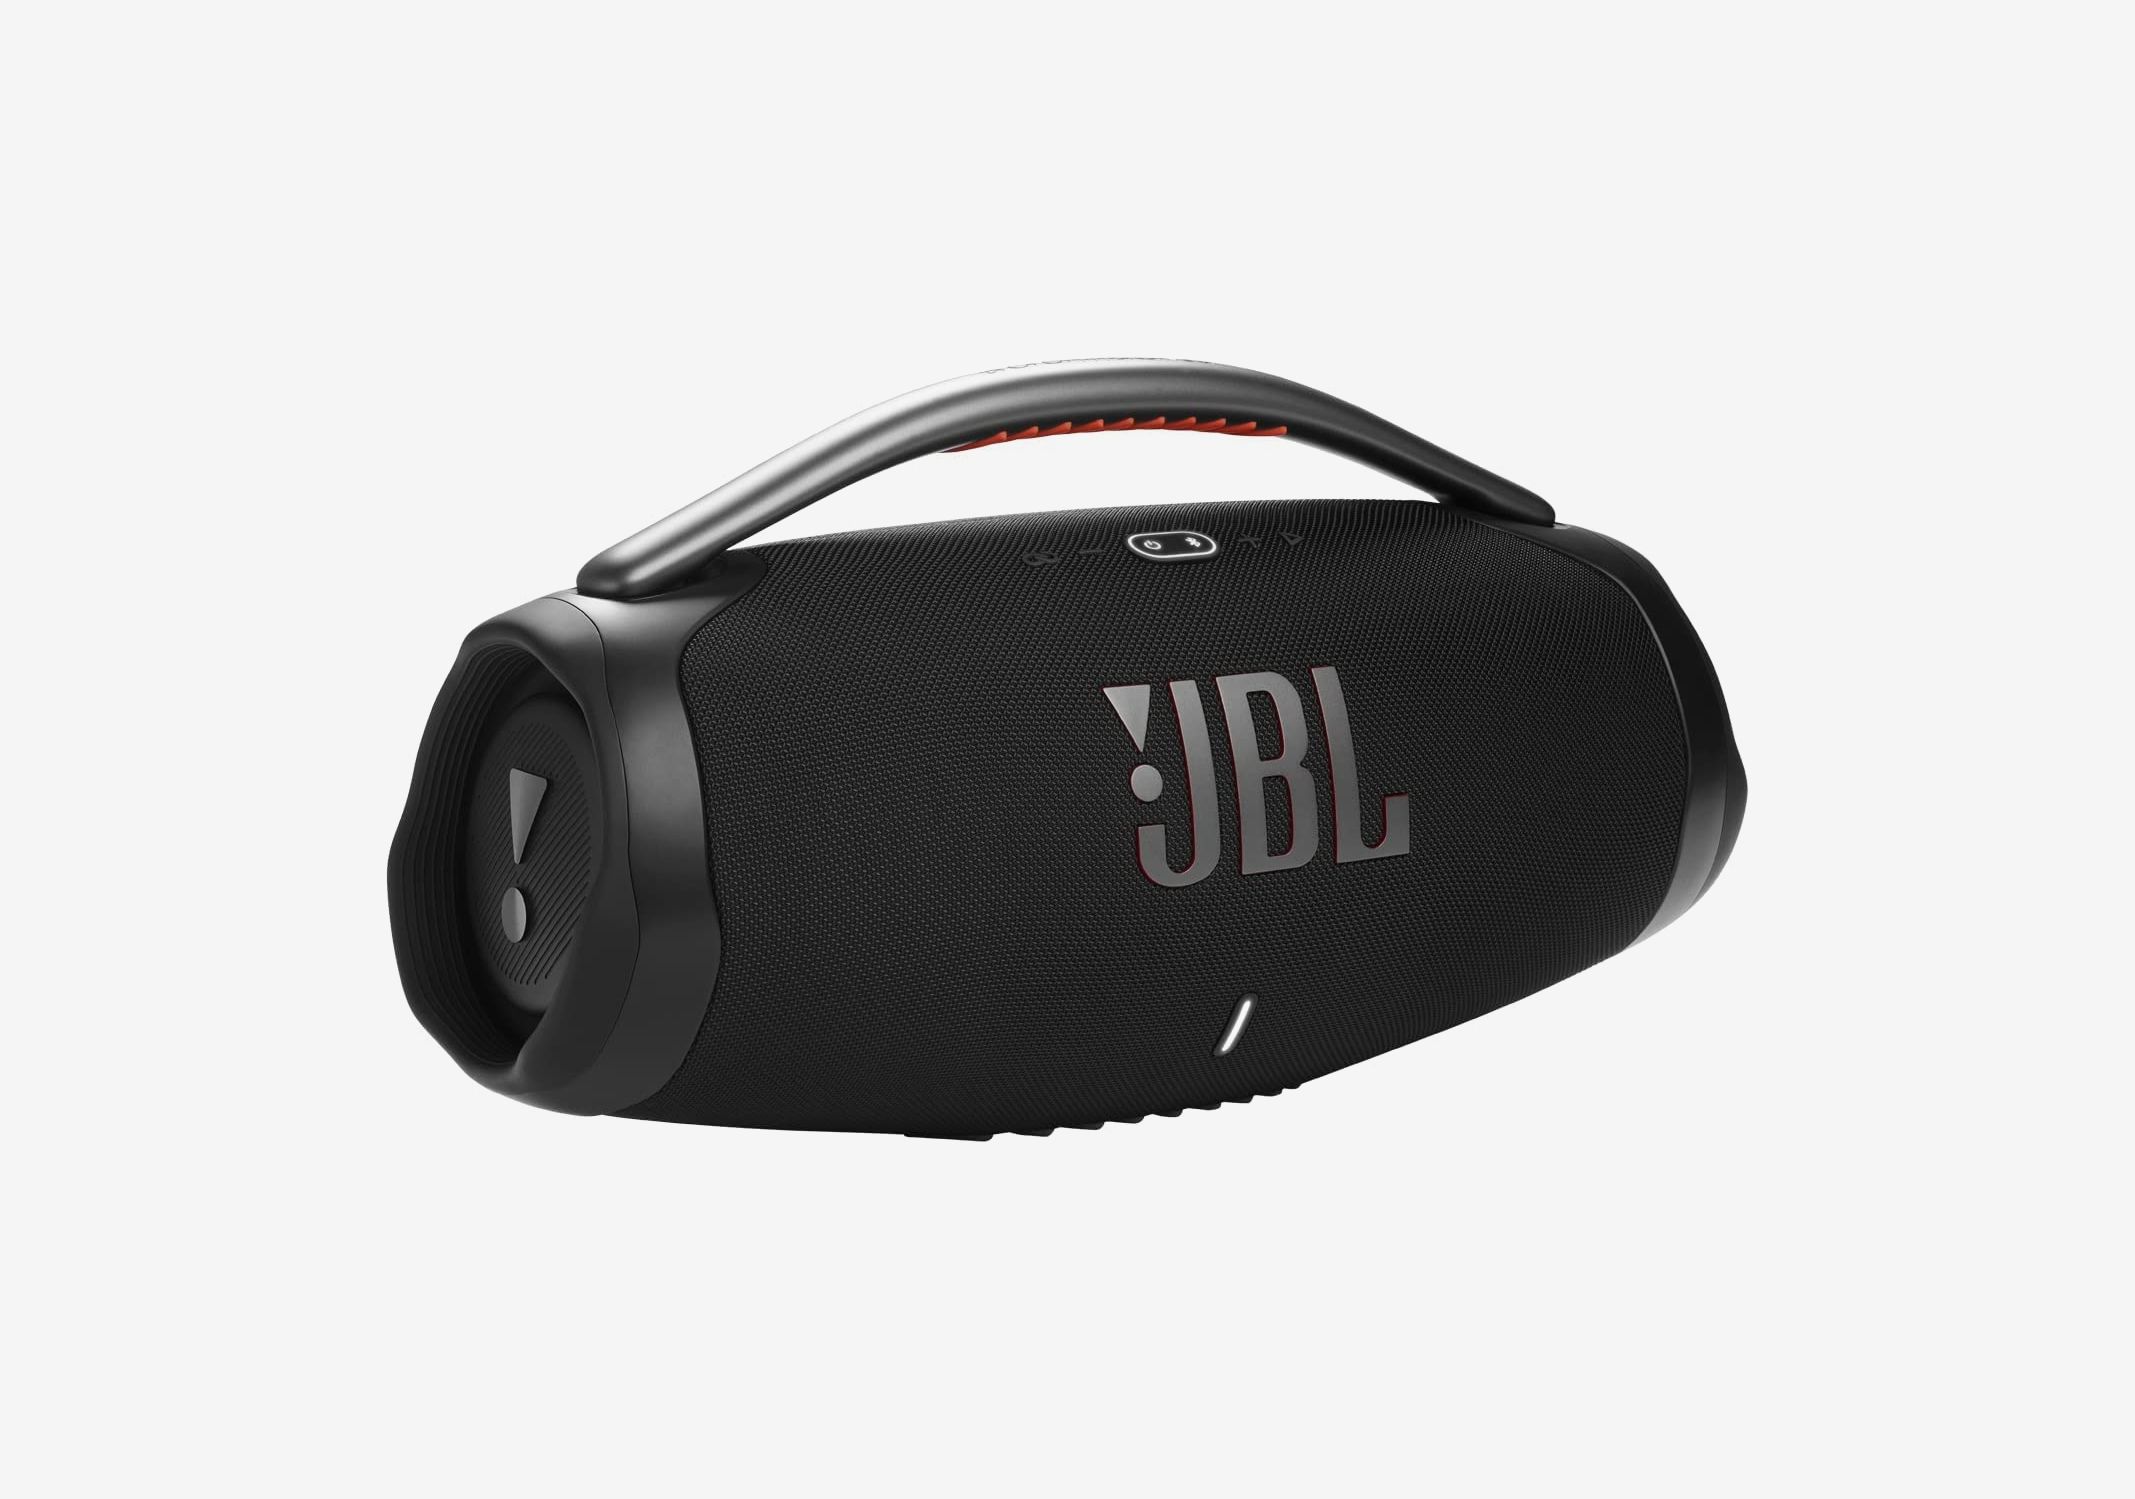 JBL Radio 📻 How to set up FM Tuner on Bluetooth Speaker 